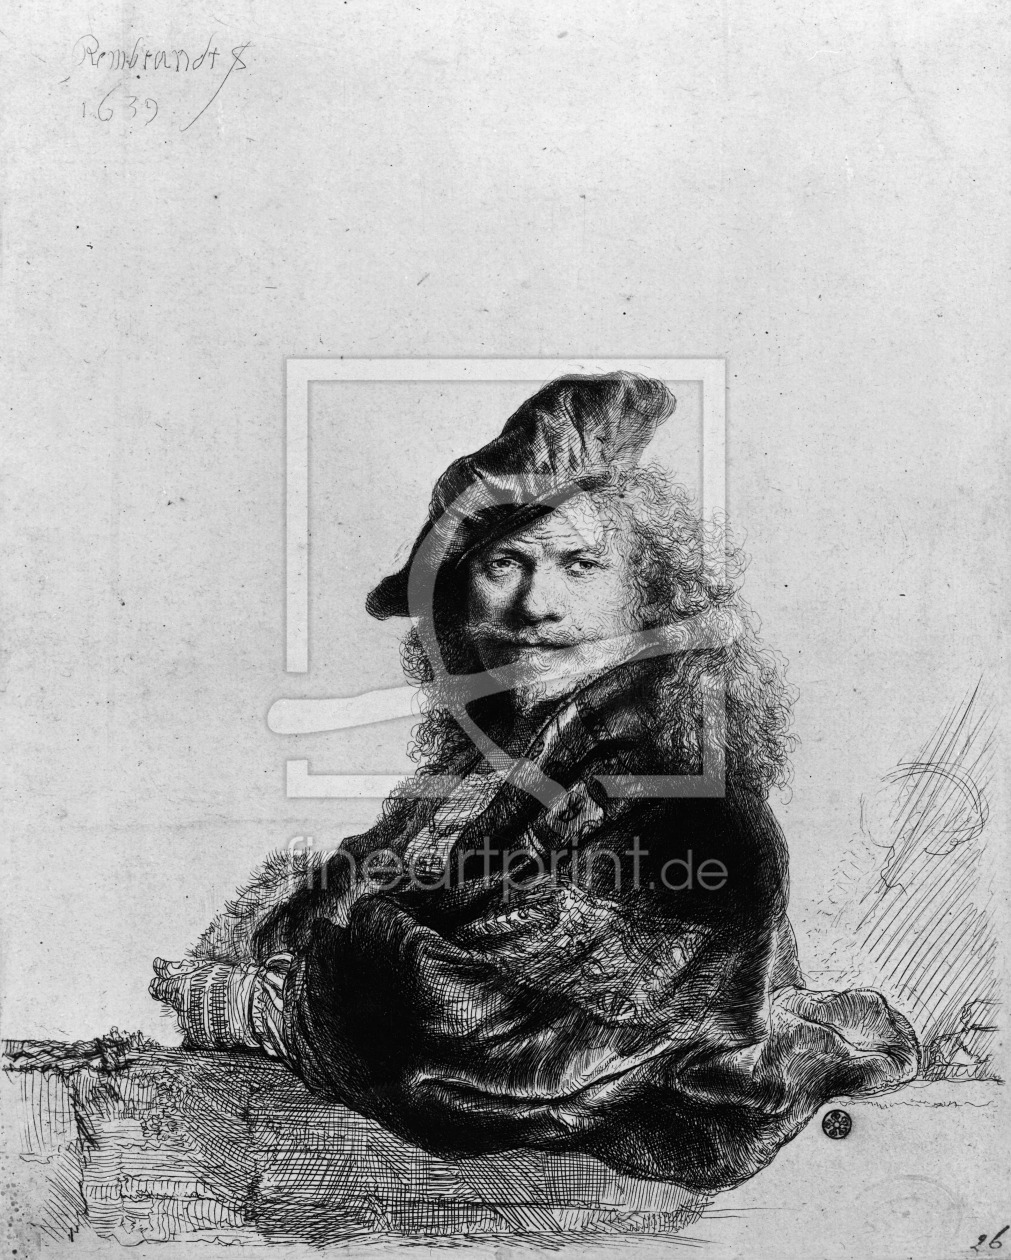 Bild-Nr.: 31001036 Self portrait leaning on a stone sill, 1639 erstellt von Rembrandt Harmenszoon van Rijn